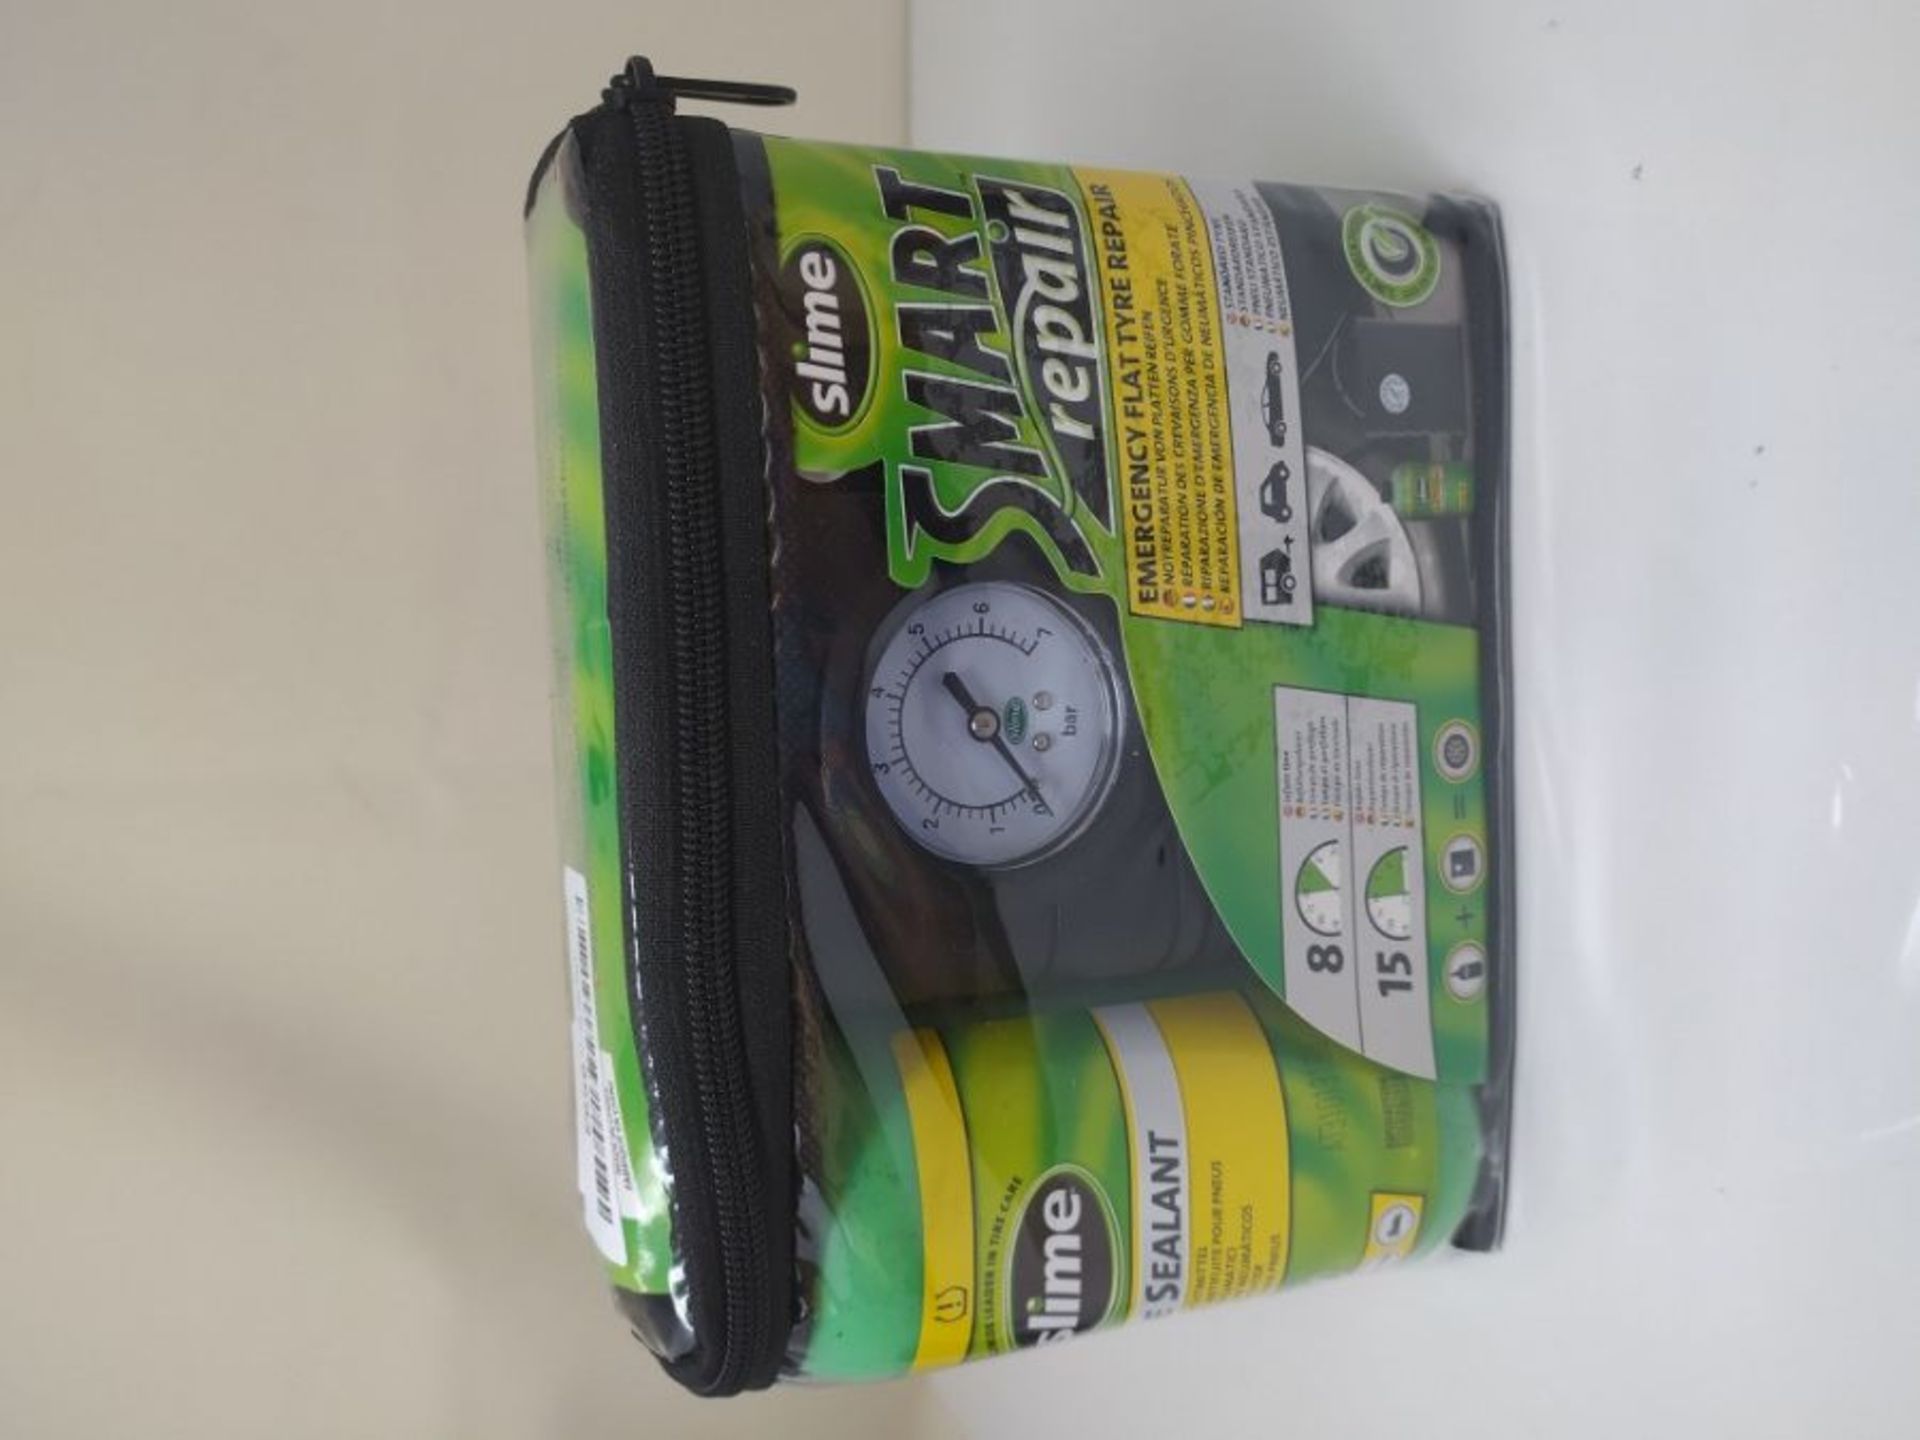 Slime CRK0305-IN Flat Tyre Puncture Repair, Smart Repair, Emergency Kit for Car Tyres, - Image 2 of 3